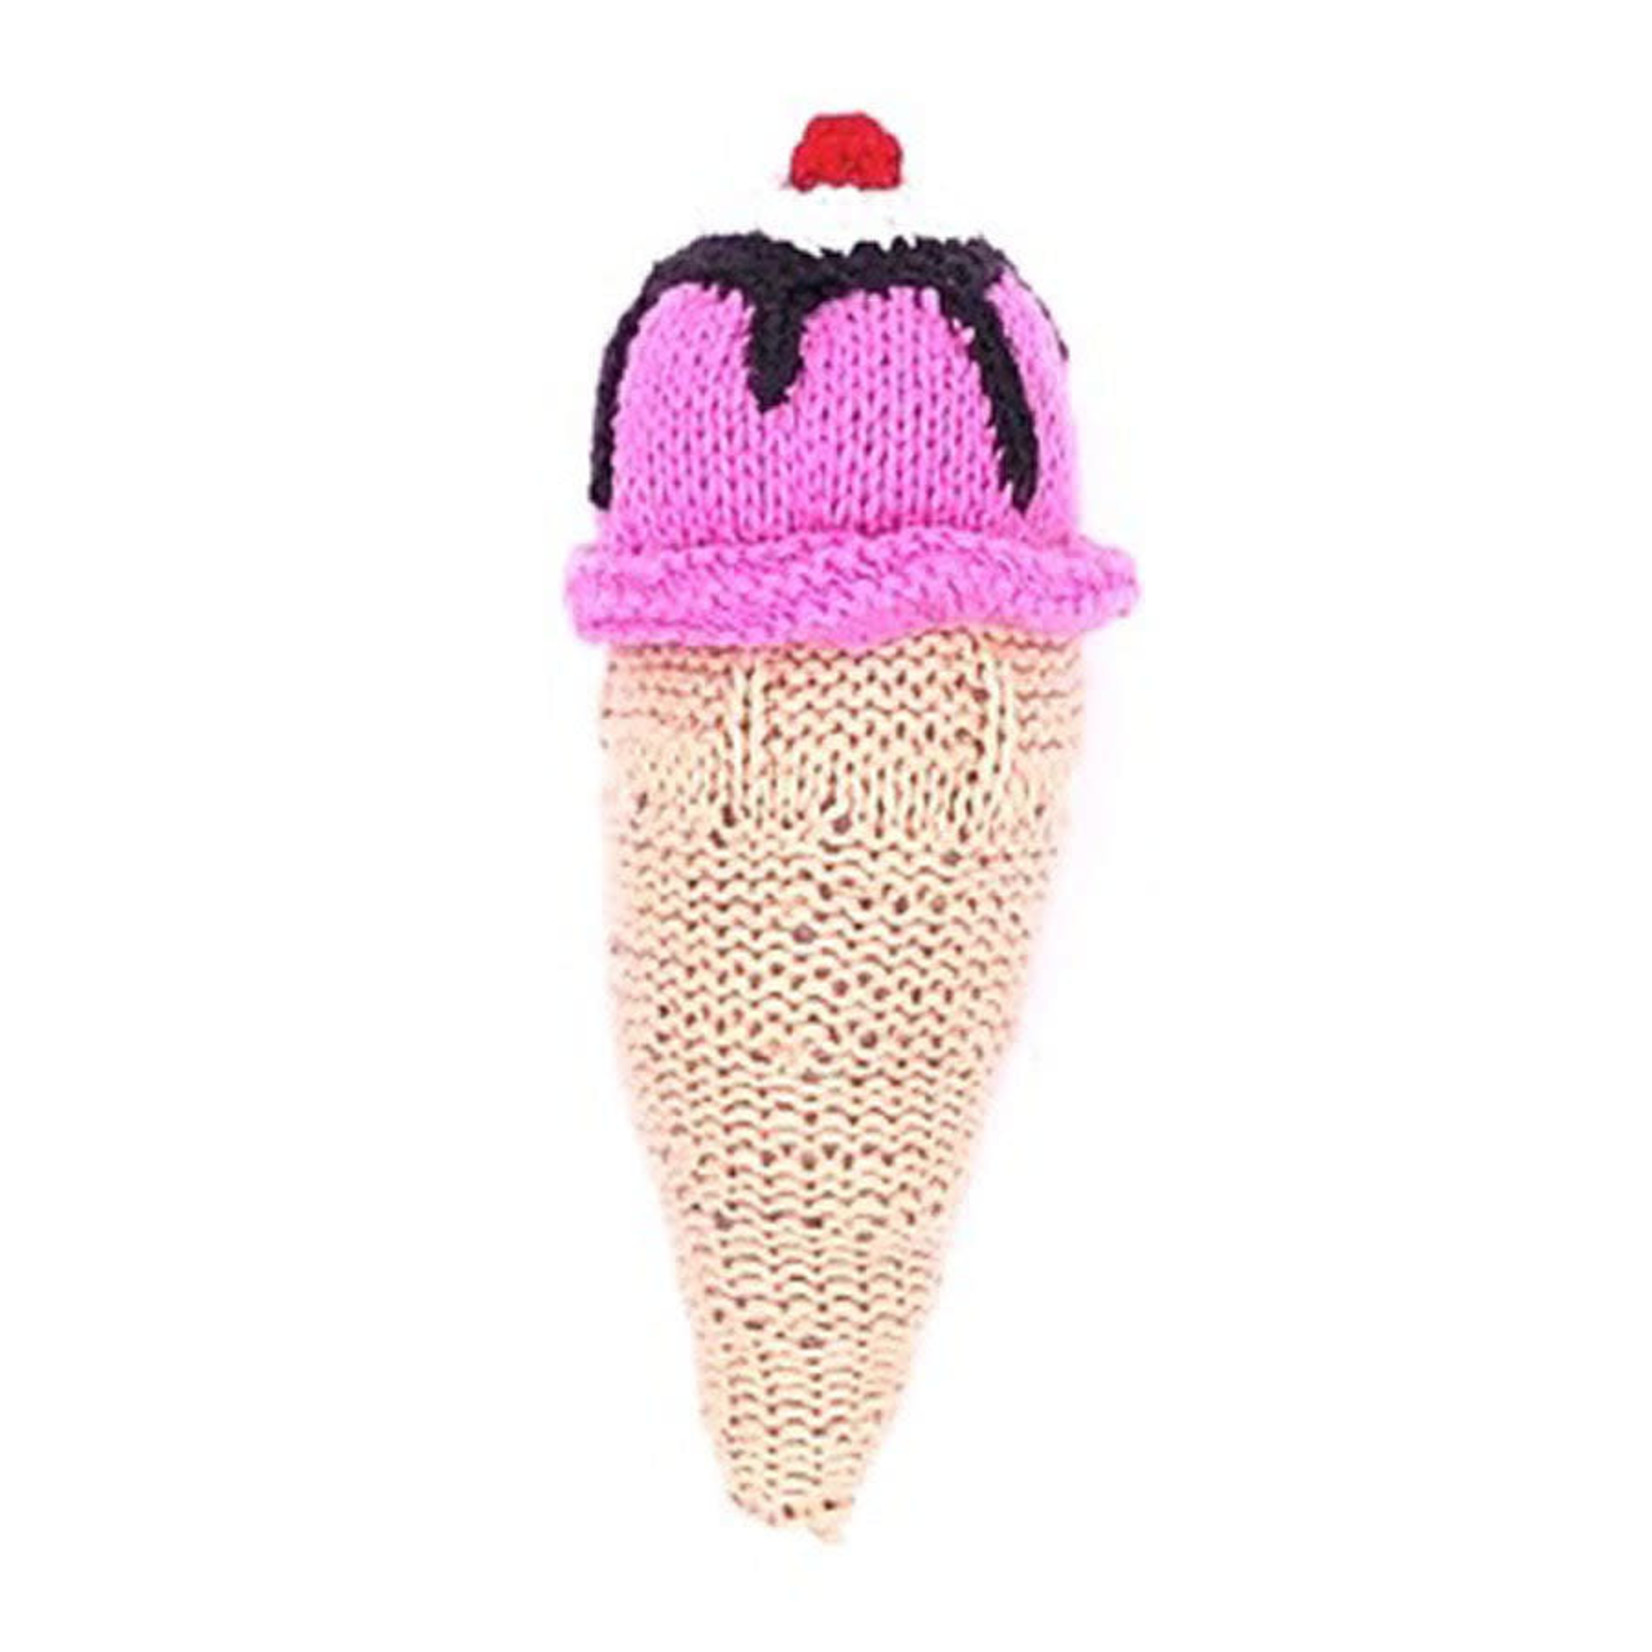 Pebble Ice Cream Cone Rattle - Strawberry